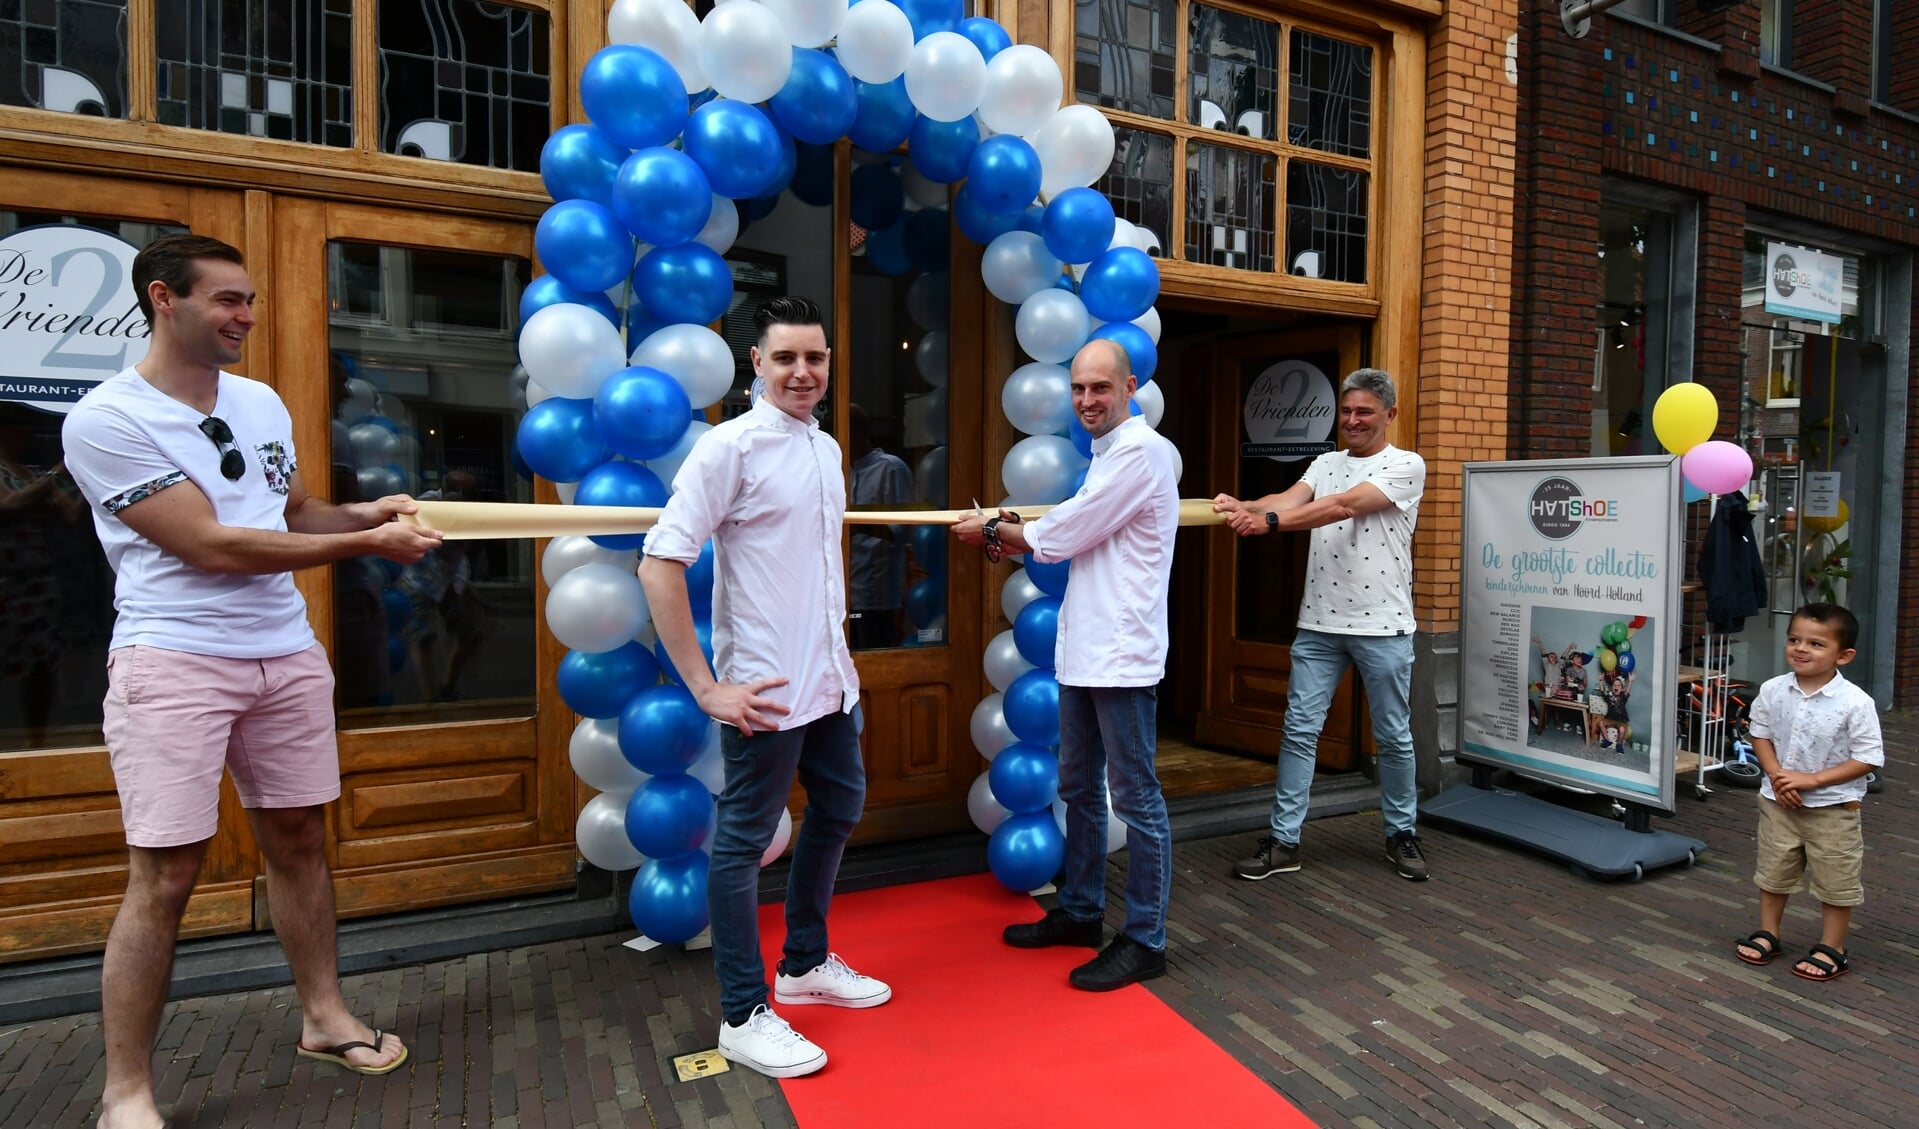 De deuren mochten op 1 juni na maanden lockdown eindelijk open van het restaurant van Alex Karten (knipt lint door) en Nick Hijnen (links op rode loper) maar moeten nu weer dicht.